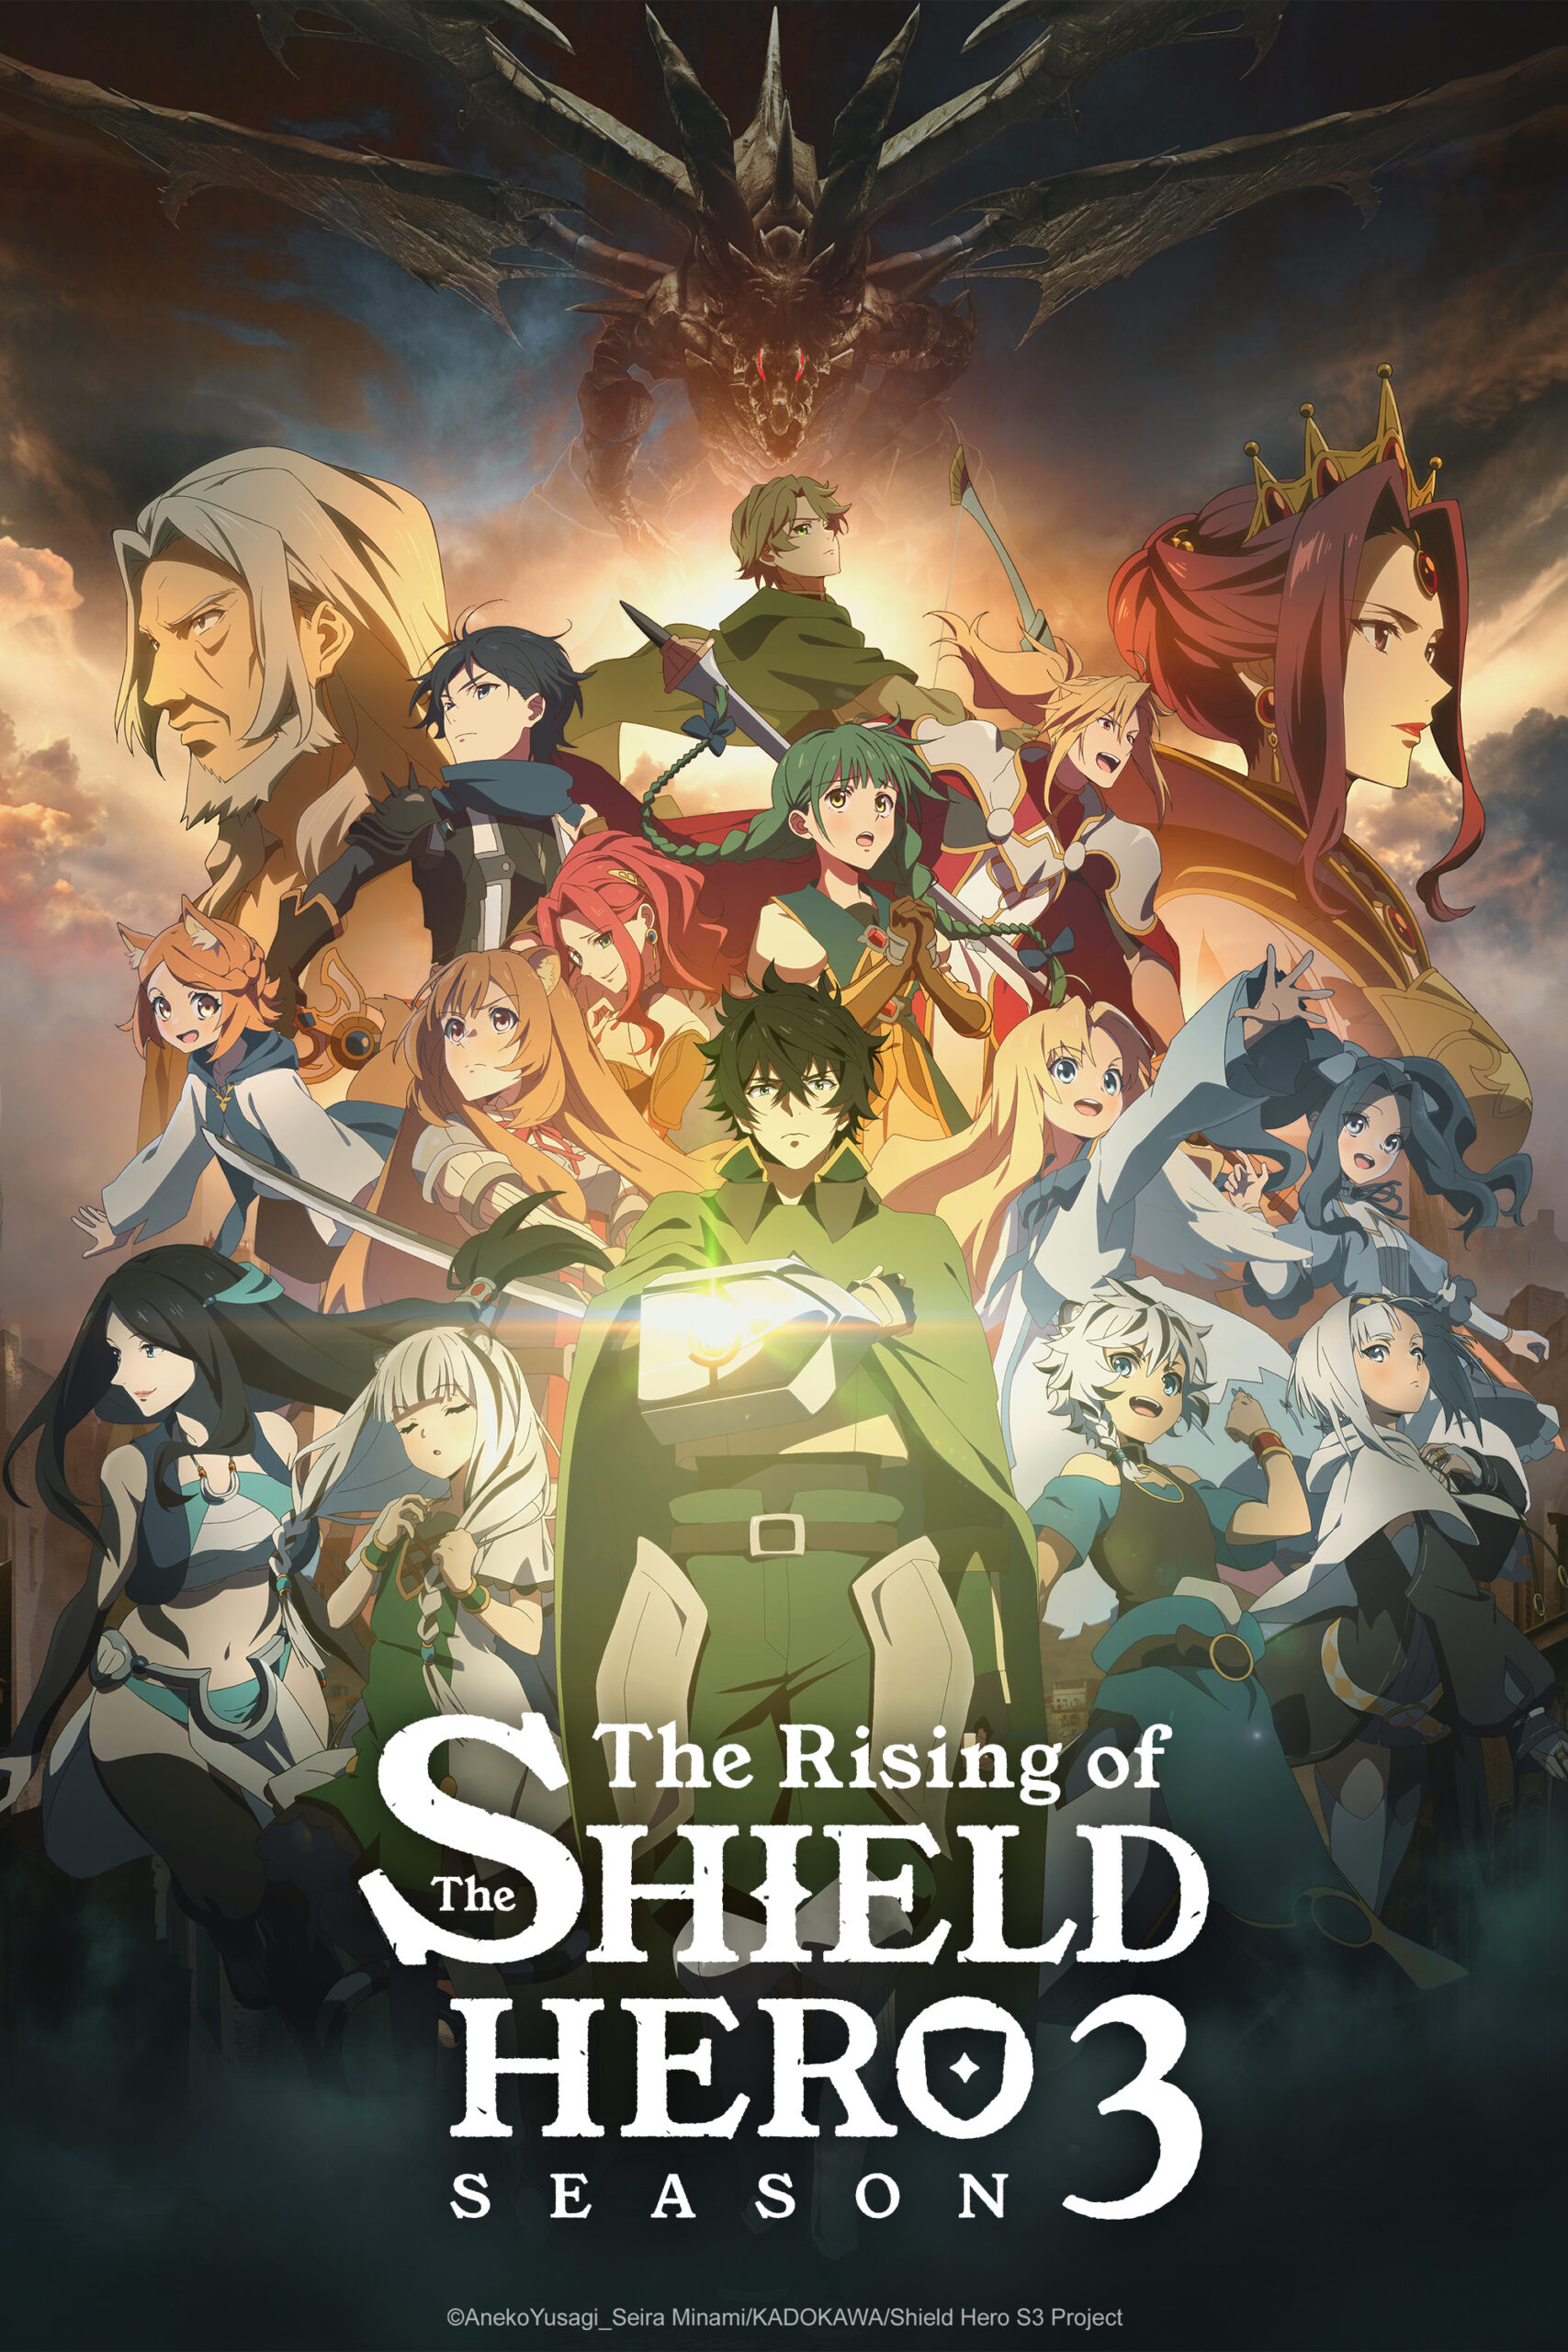 The Rising of the Shield Hero Season 3 – ©AnekoYusagi_Seira Minami-KADOKAWA-Shield Hero S3 Project